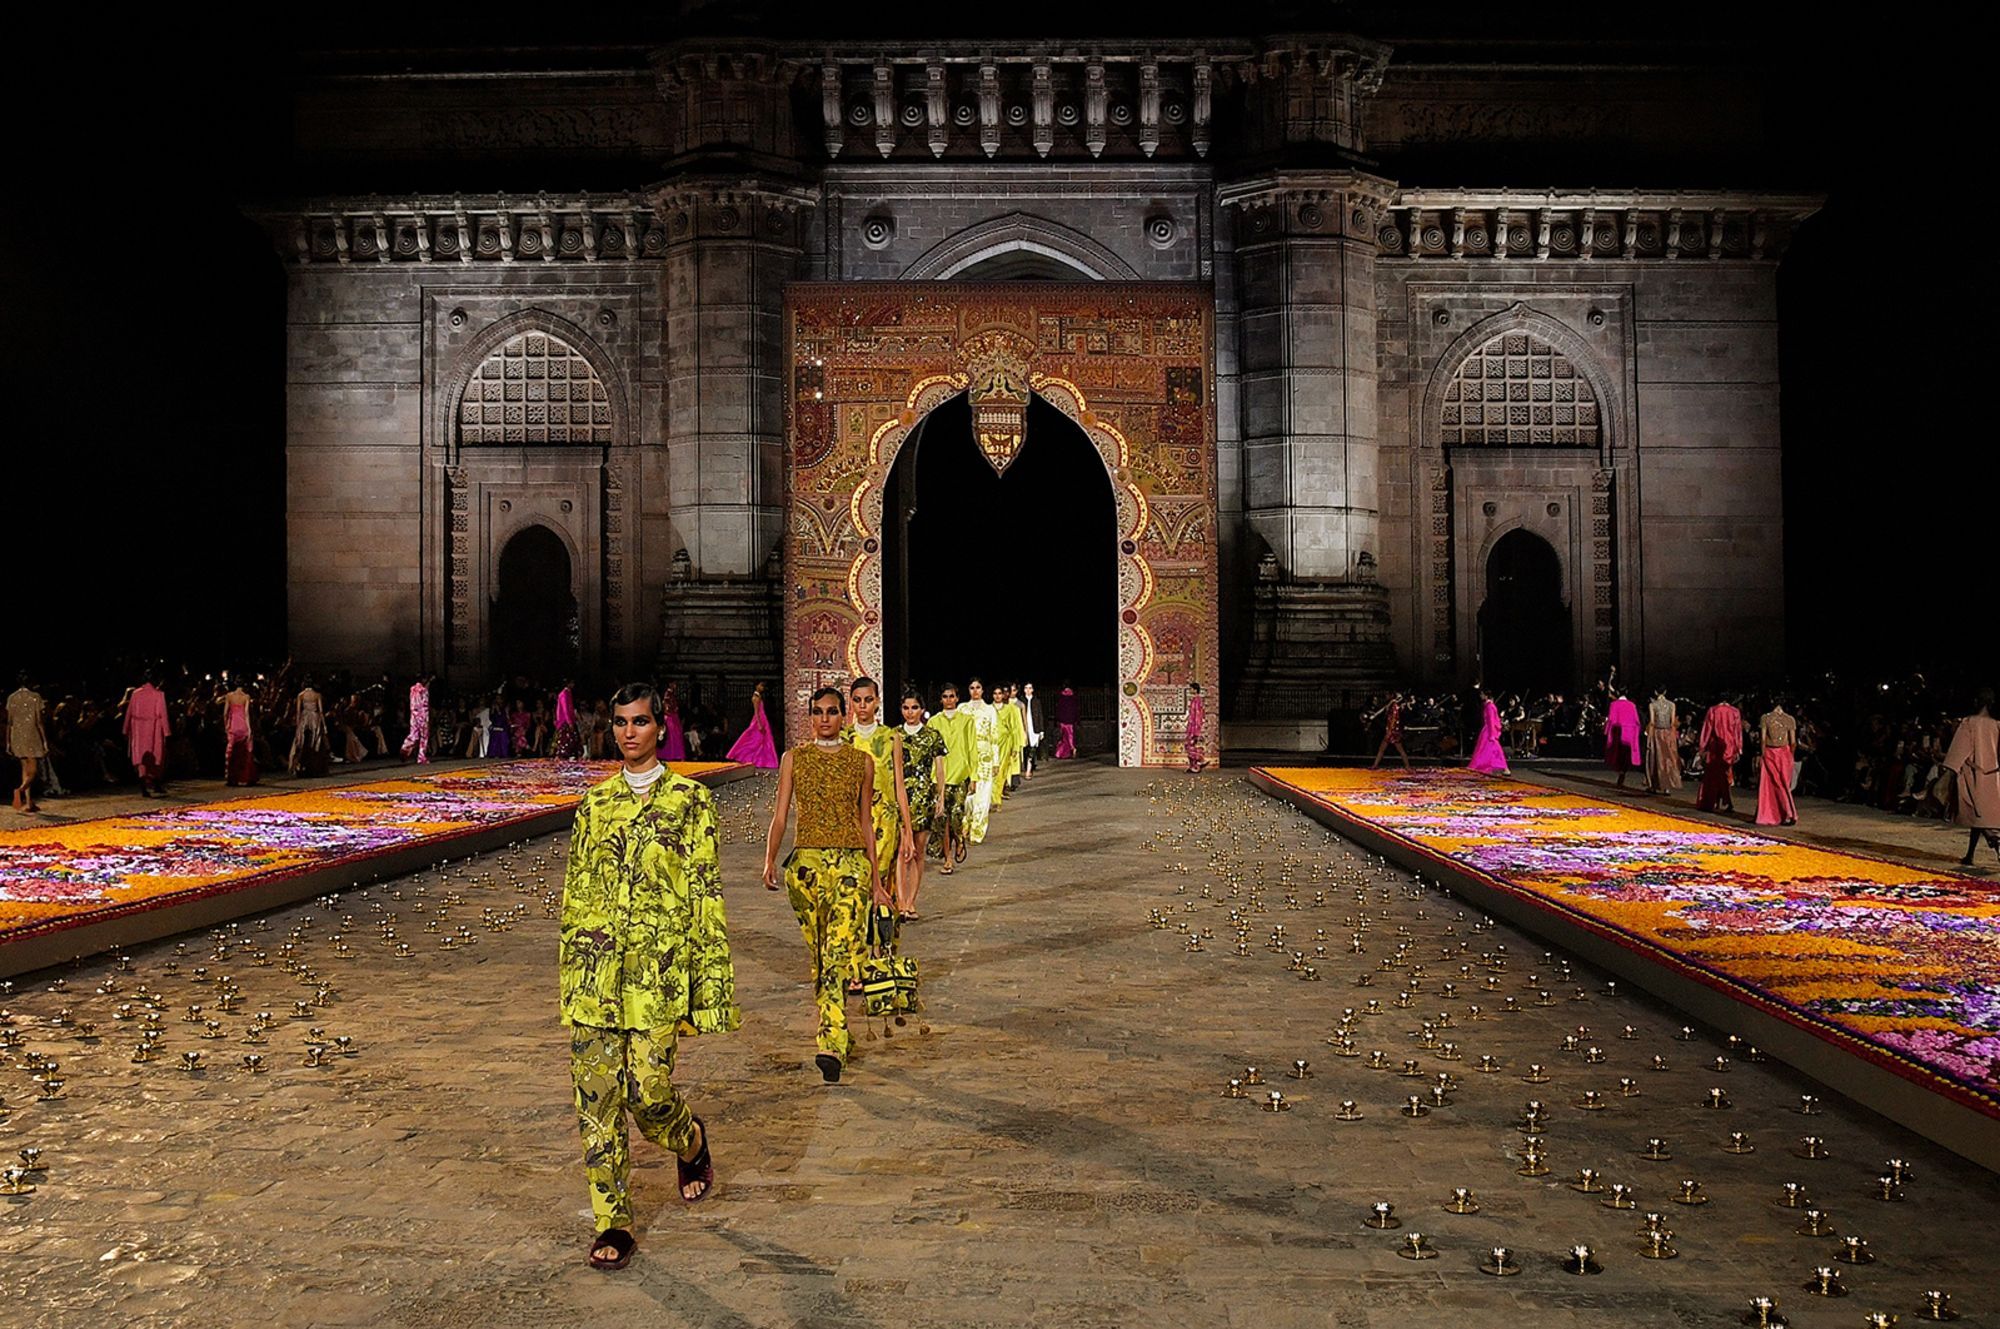 World's richest man eyes India's luxury market with landmark Dior show